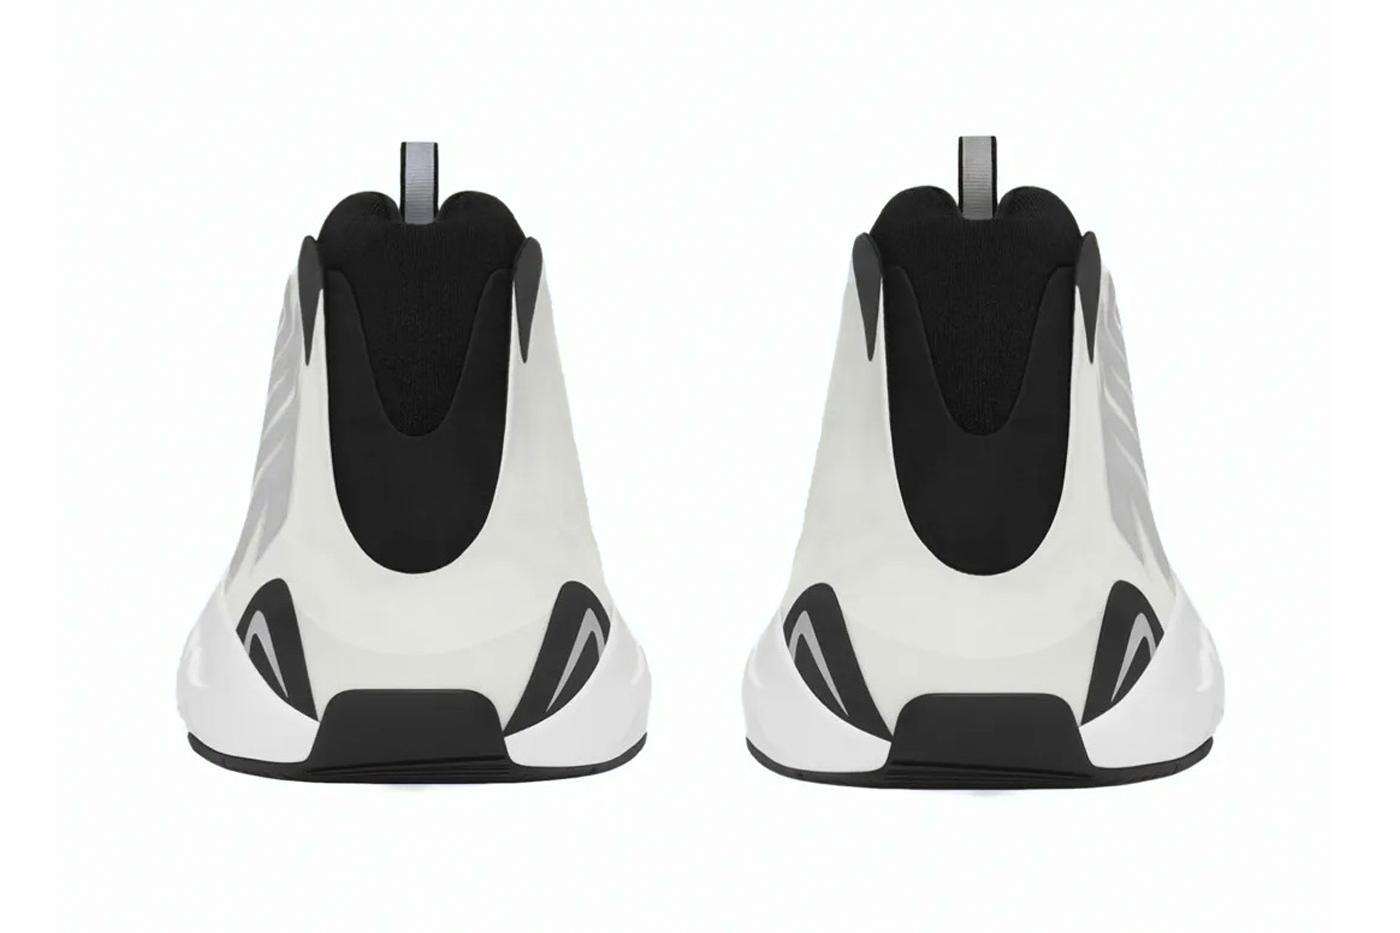 Известна дата выпуска новых кроссовок Adidas YEEZY BOOST 700 MNVN Analog